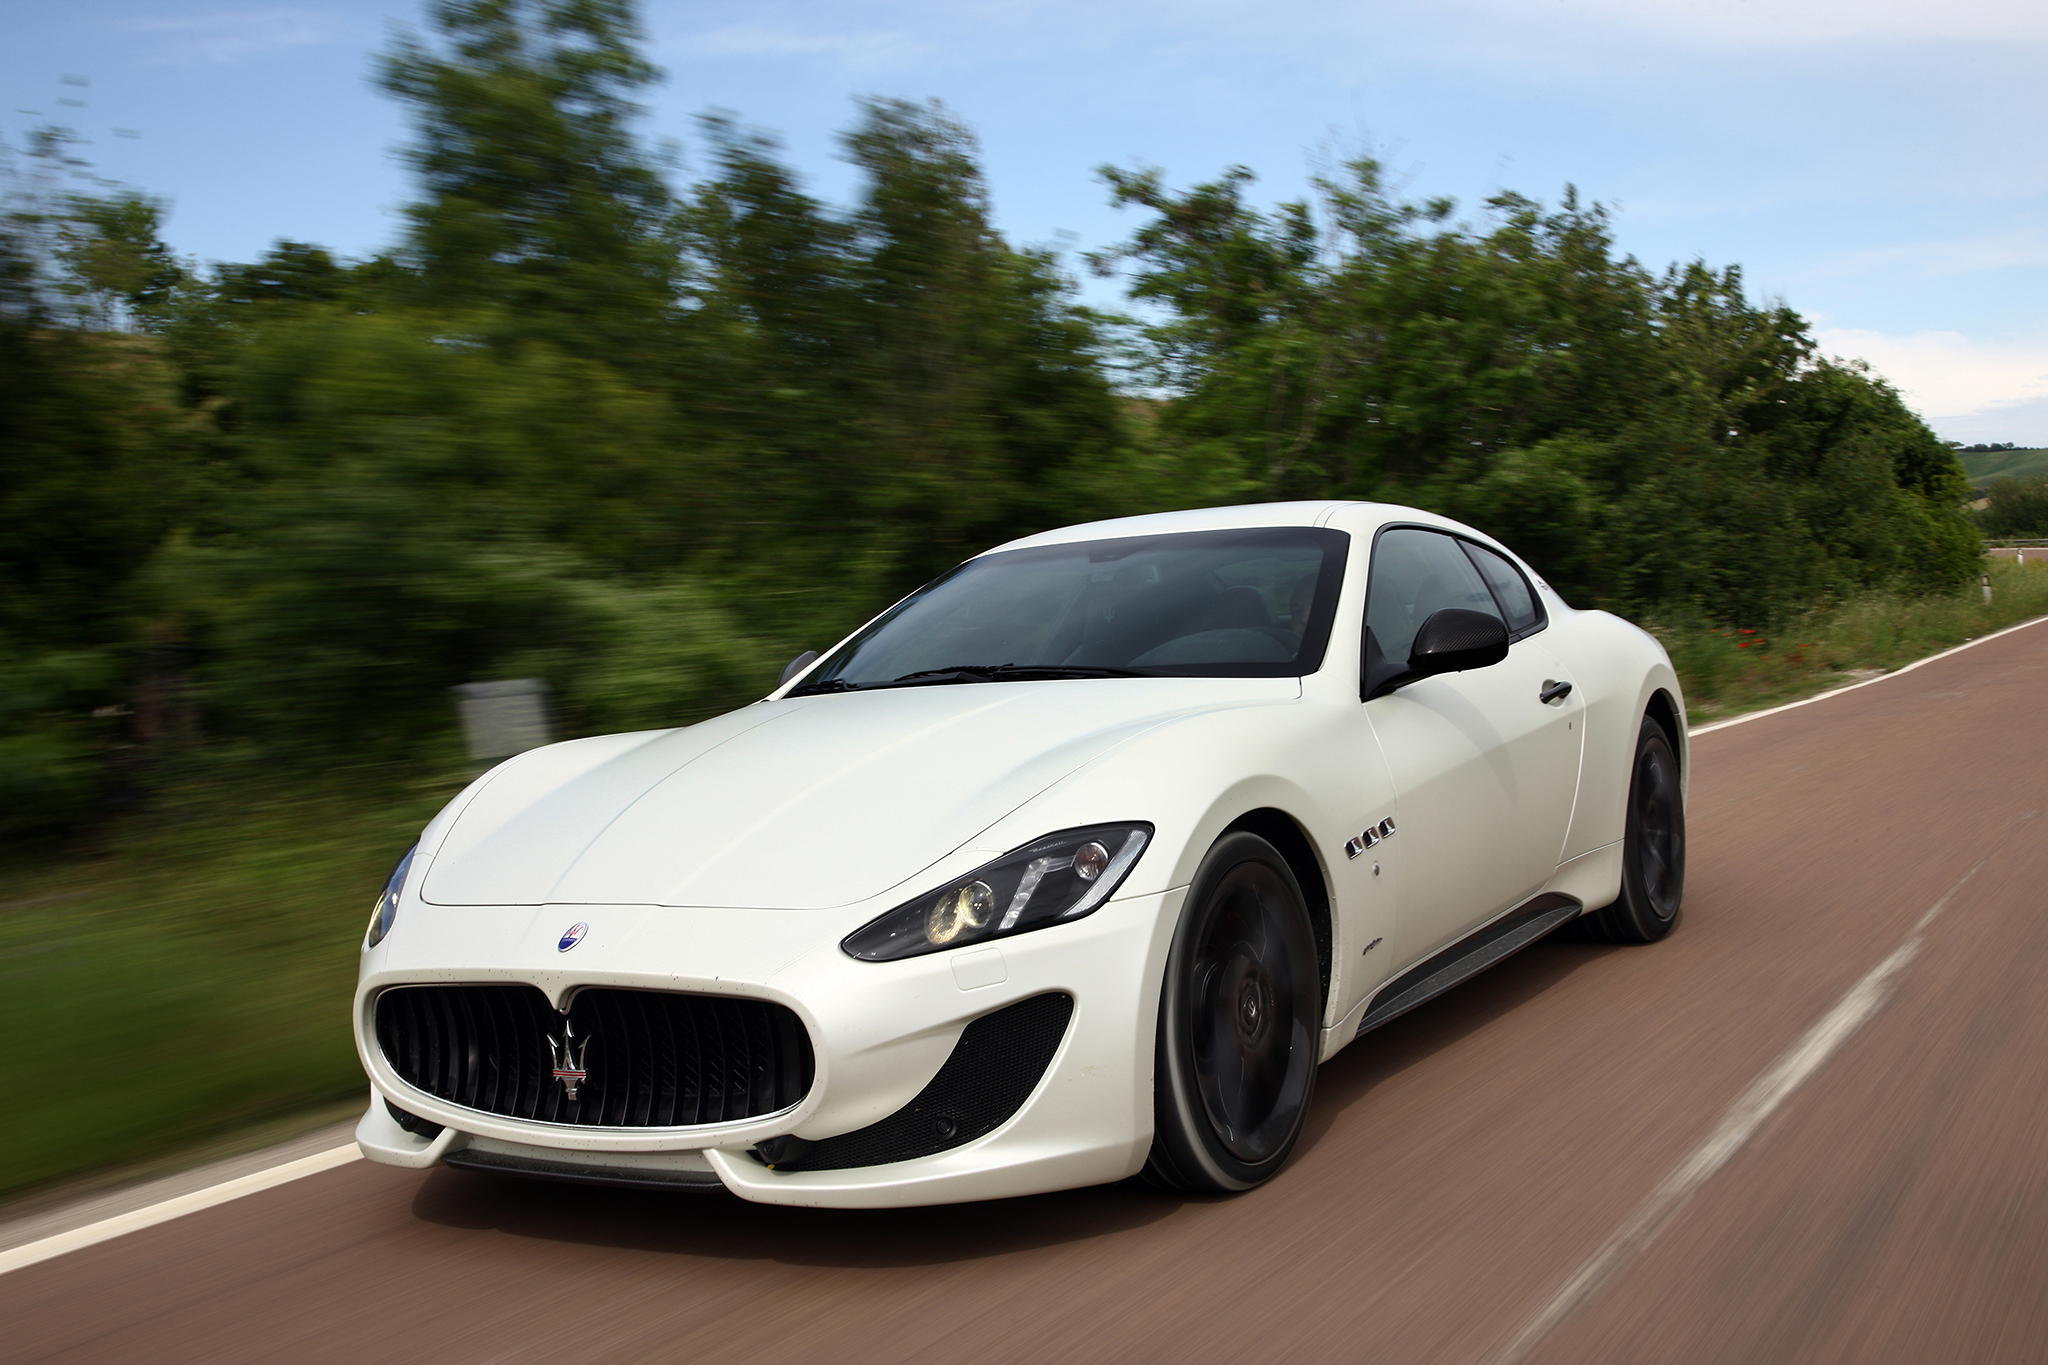 Amazing Maserati GranTurismo Pictures & Backgrounds